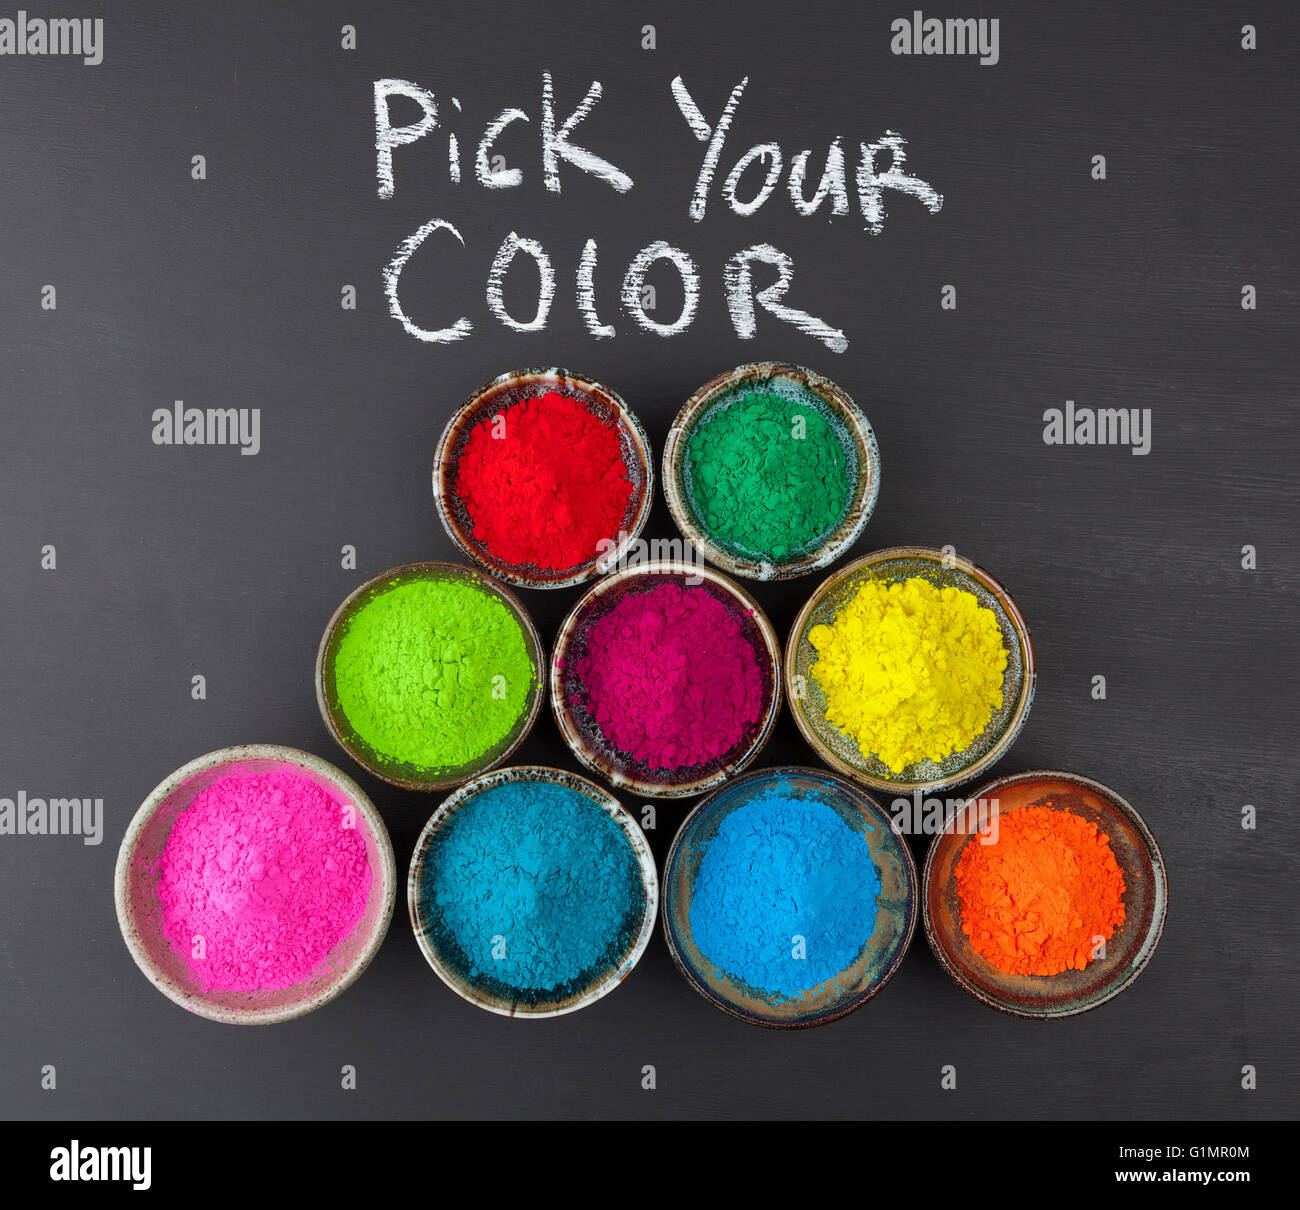 Wählen Sie Ihr Farbkonzept mit bunt gefärbten Pulver in Keramikbechern an Tafel dargestellt. Stockfoto